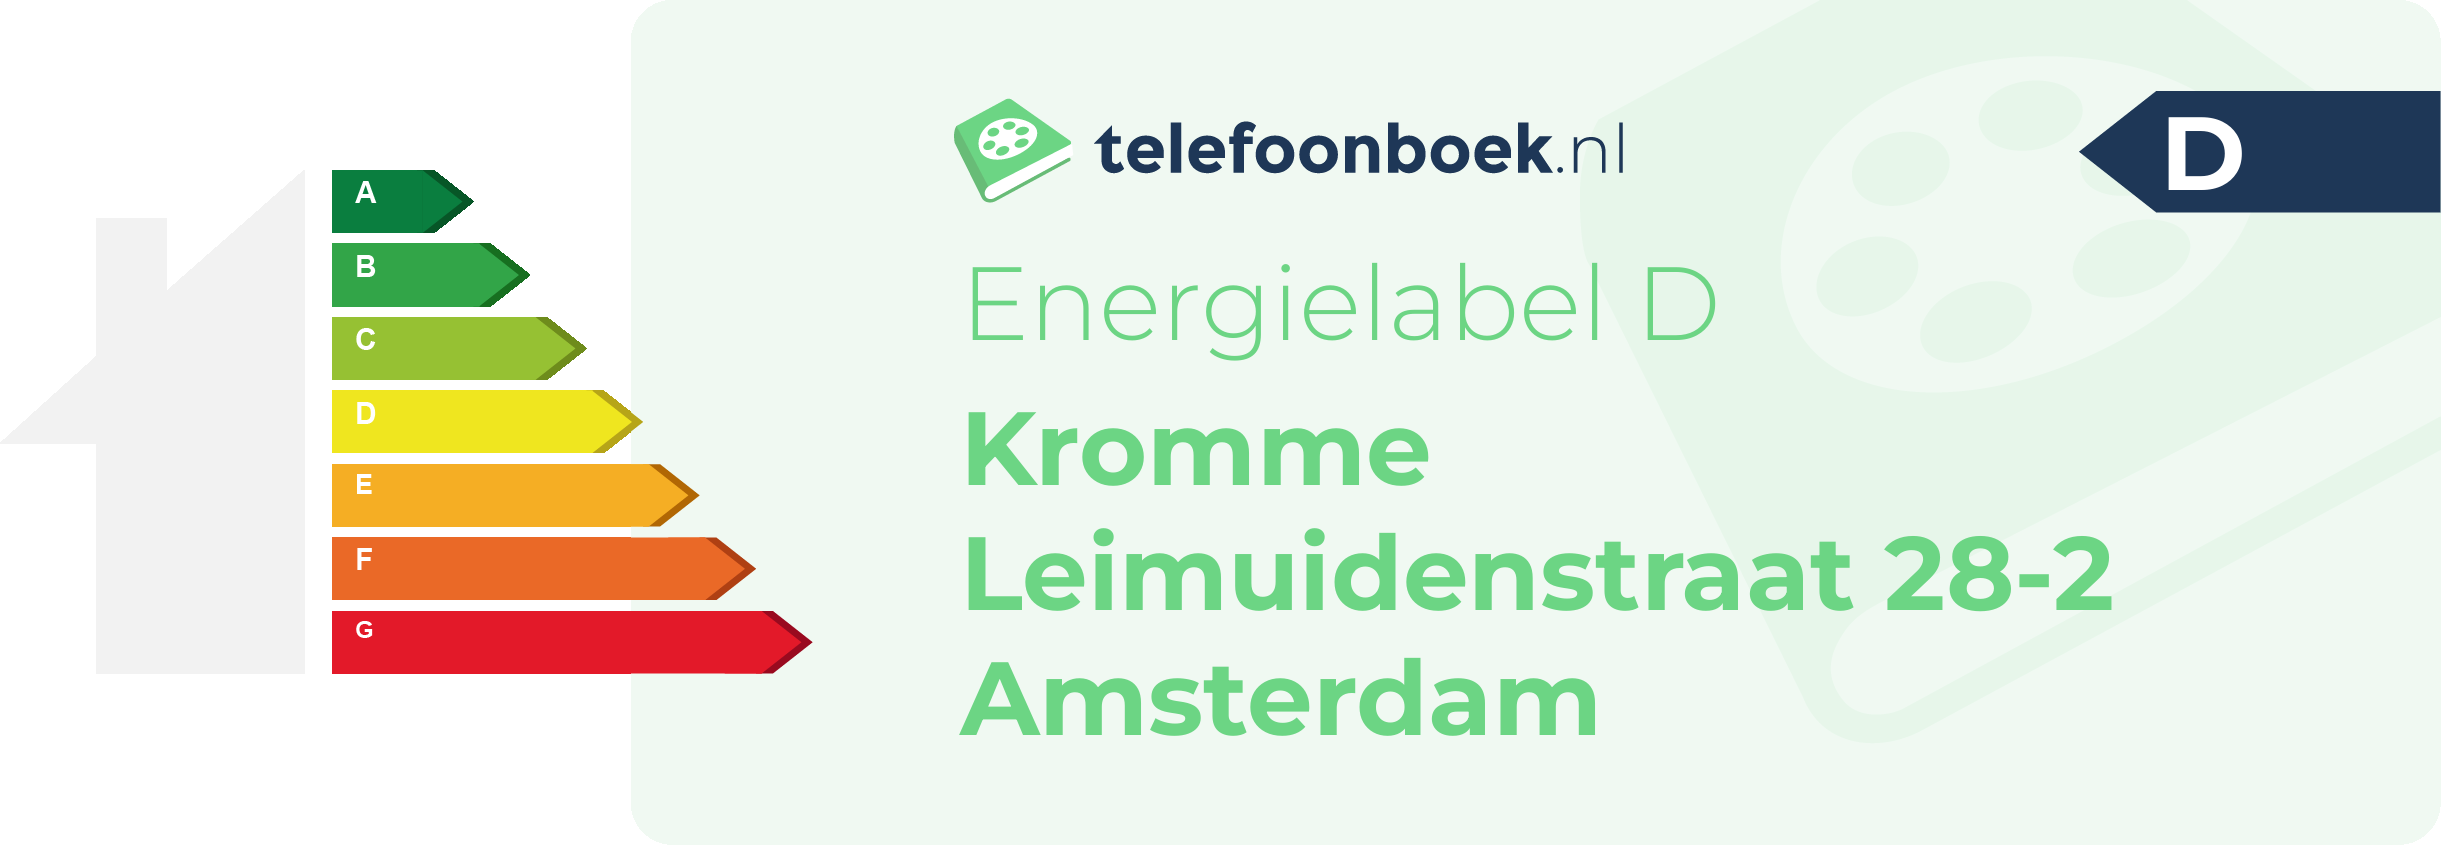 Energielabel Kromme Leimuidenstraat 28-2 Amsterdam